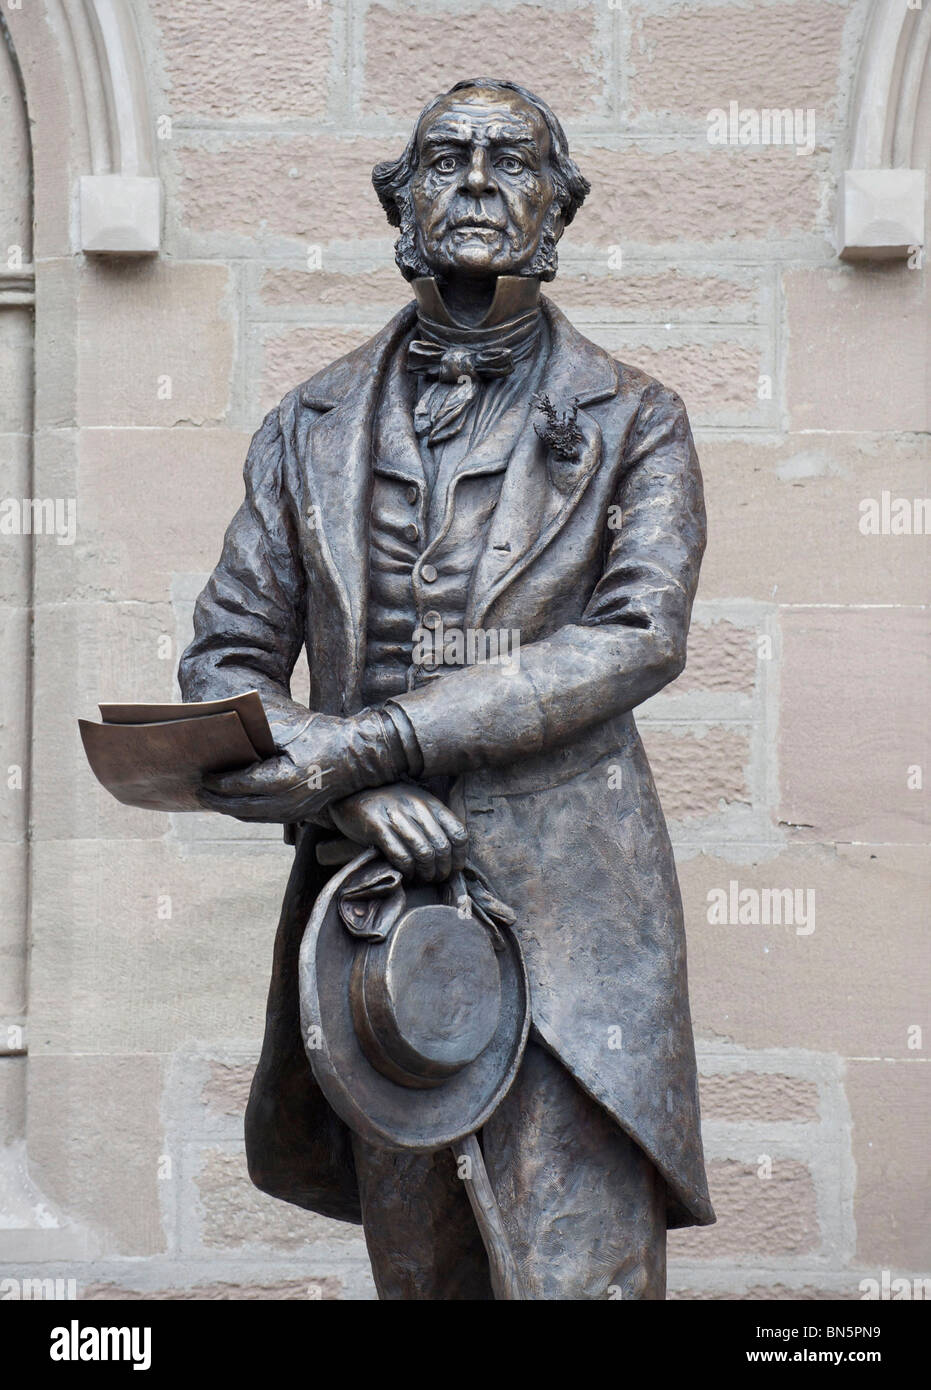 Statua di bronzo di Victorian primo ministro e 'Grand Old Man' della politica William Ewart Gladstone dall'artista Jemma Pearson. Foto Stock